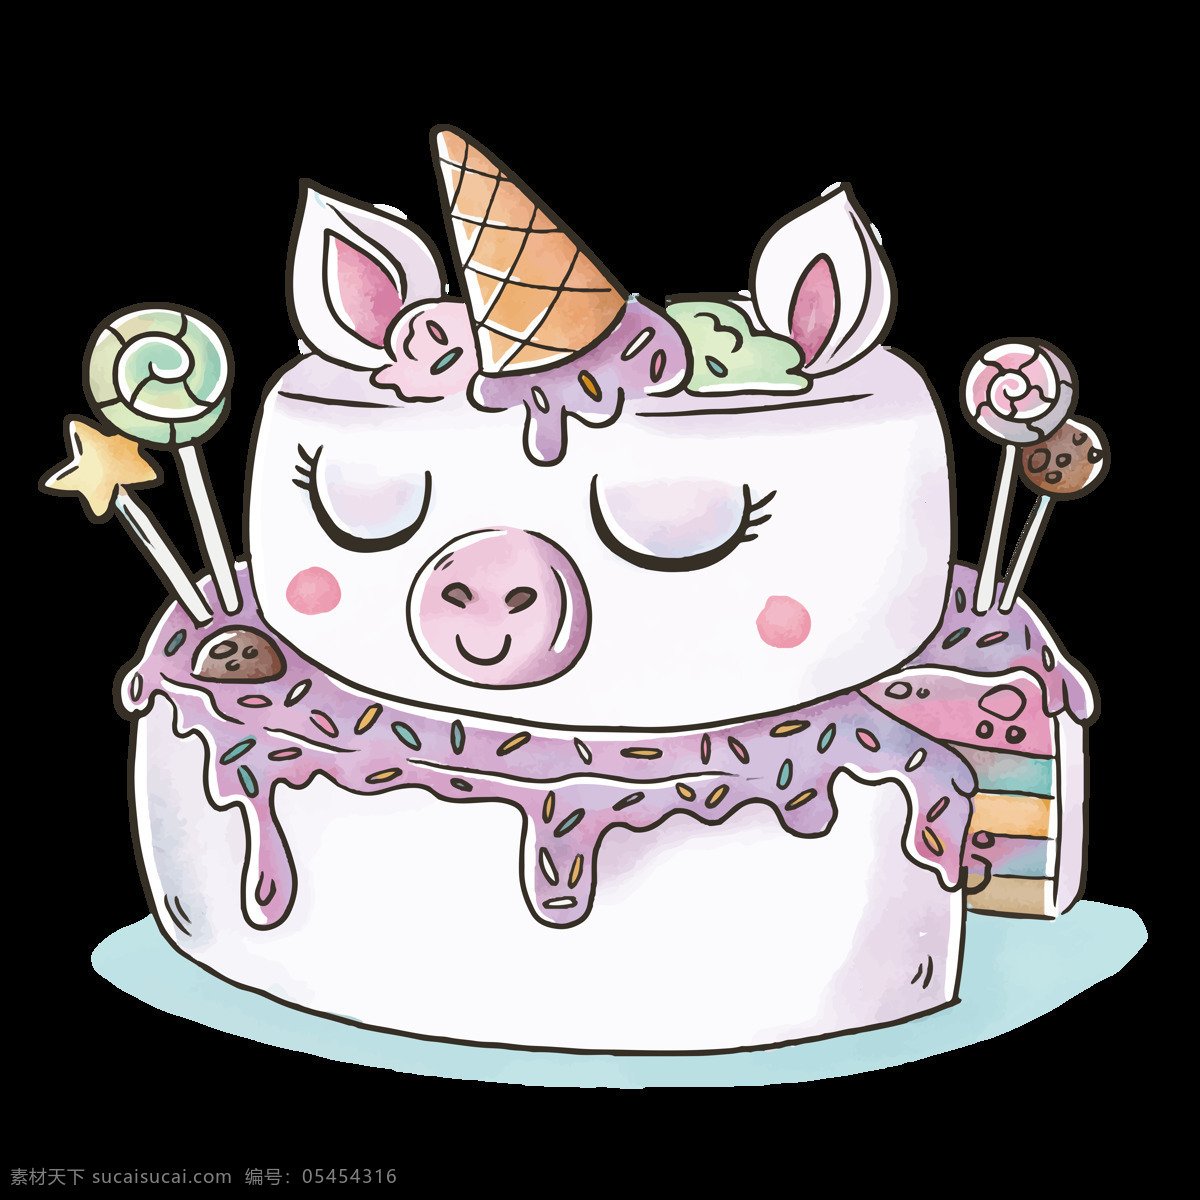 独角兽 蛋糕 卡通 商用 元素 派对 生日蛋糕 甜甜圈 彩虹蛋糕